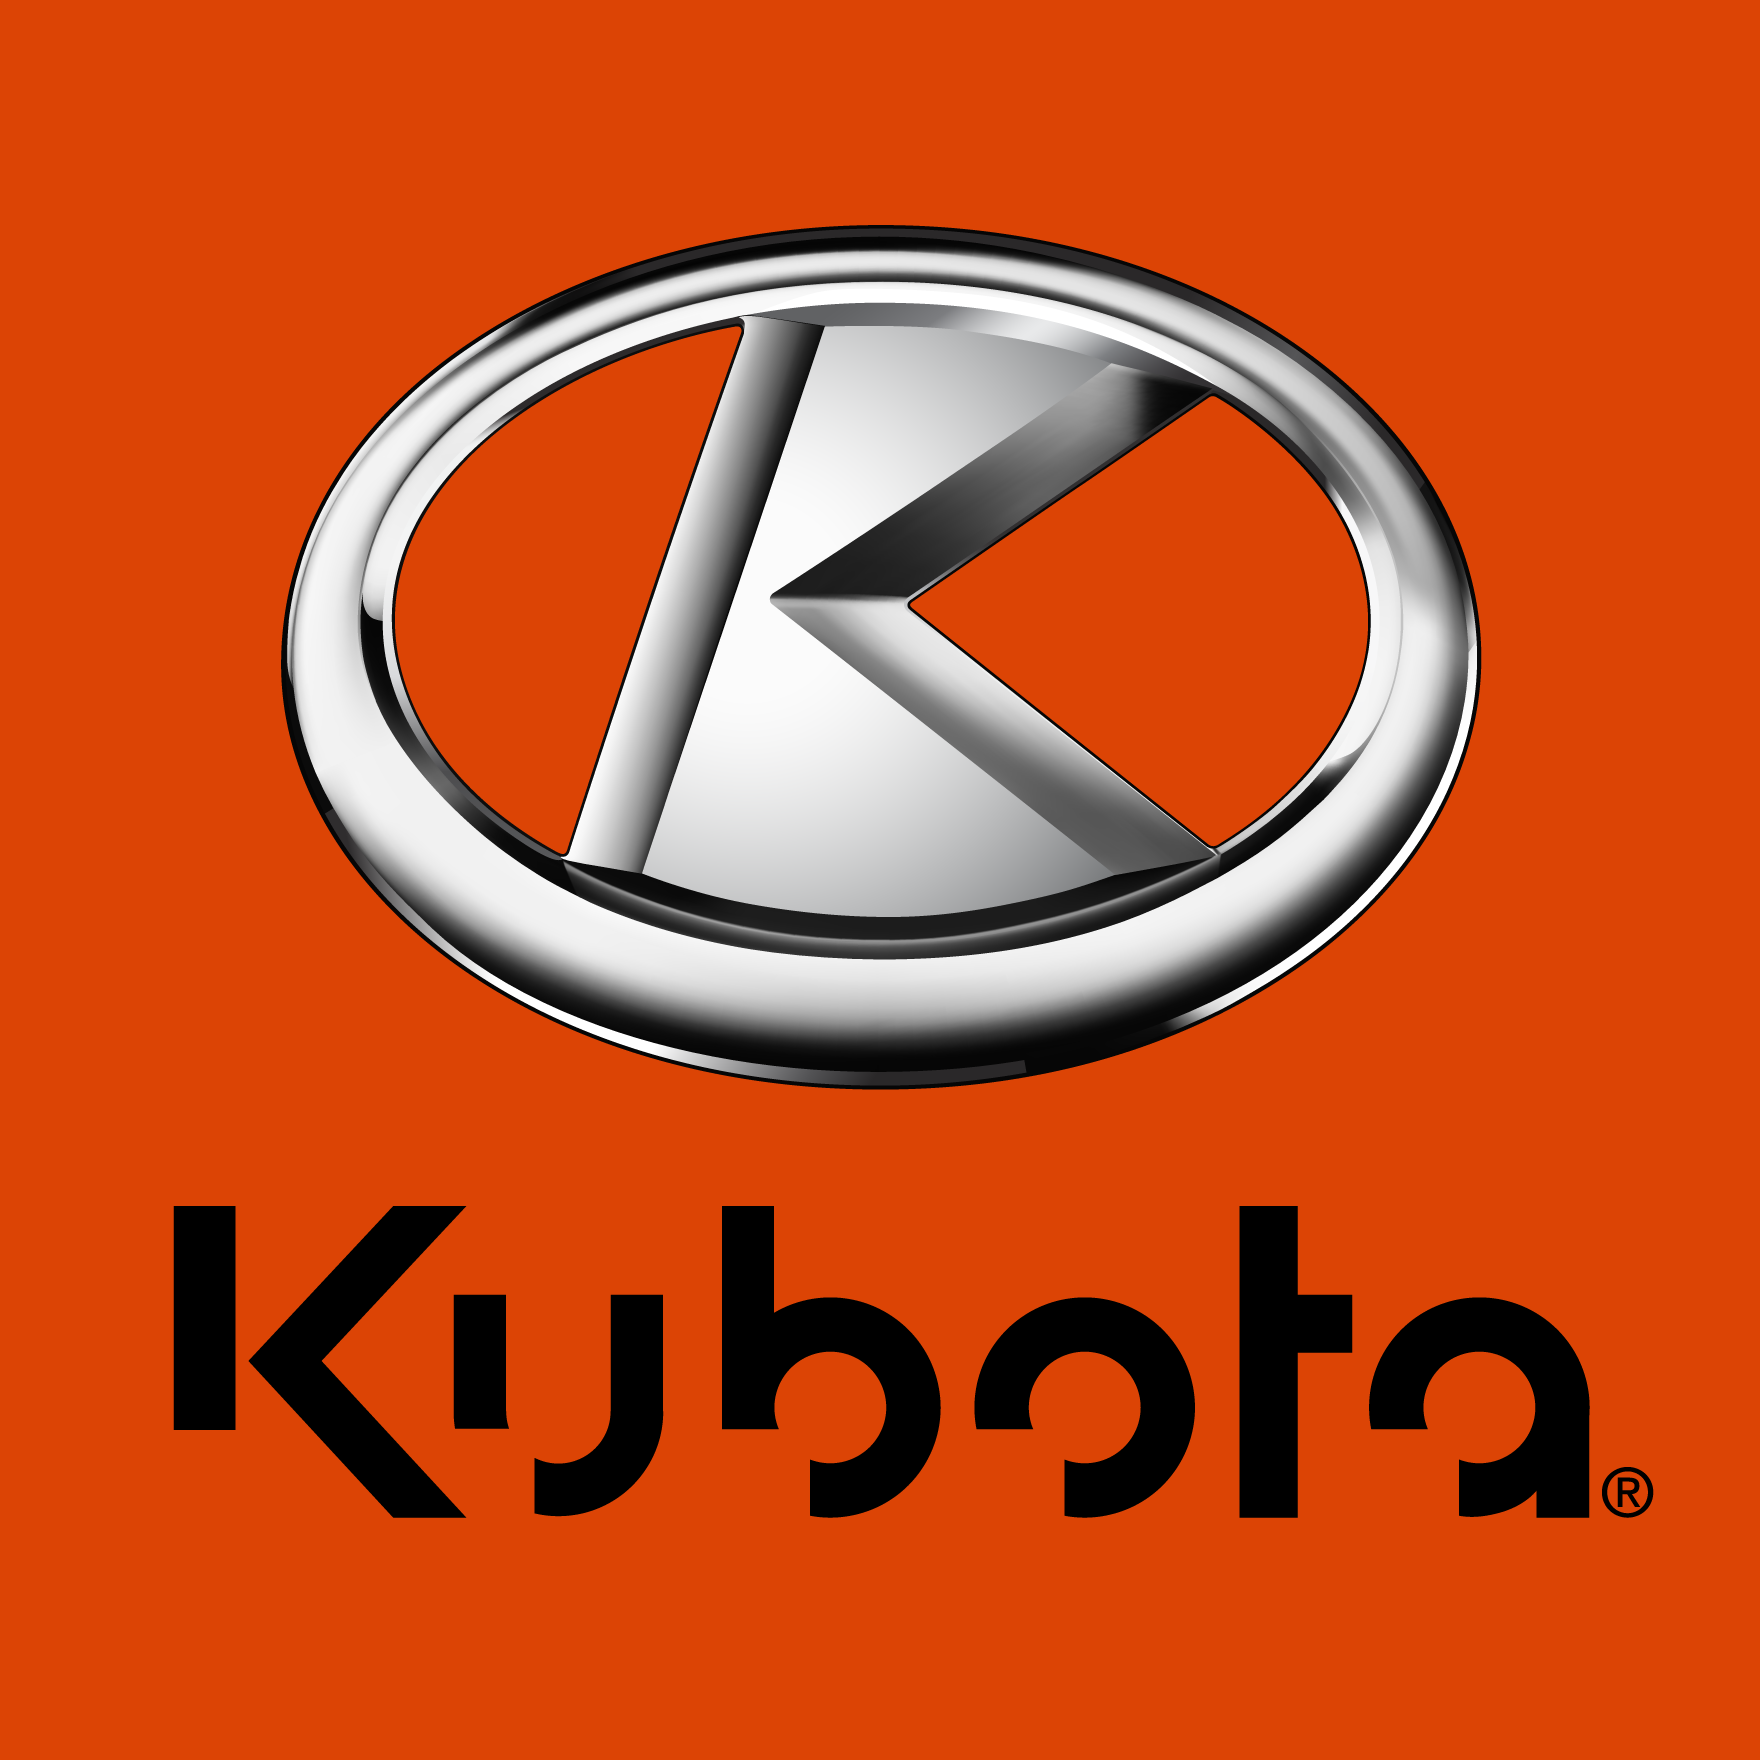 Kubota-logo-2022